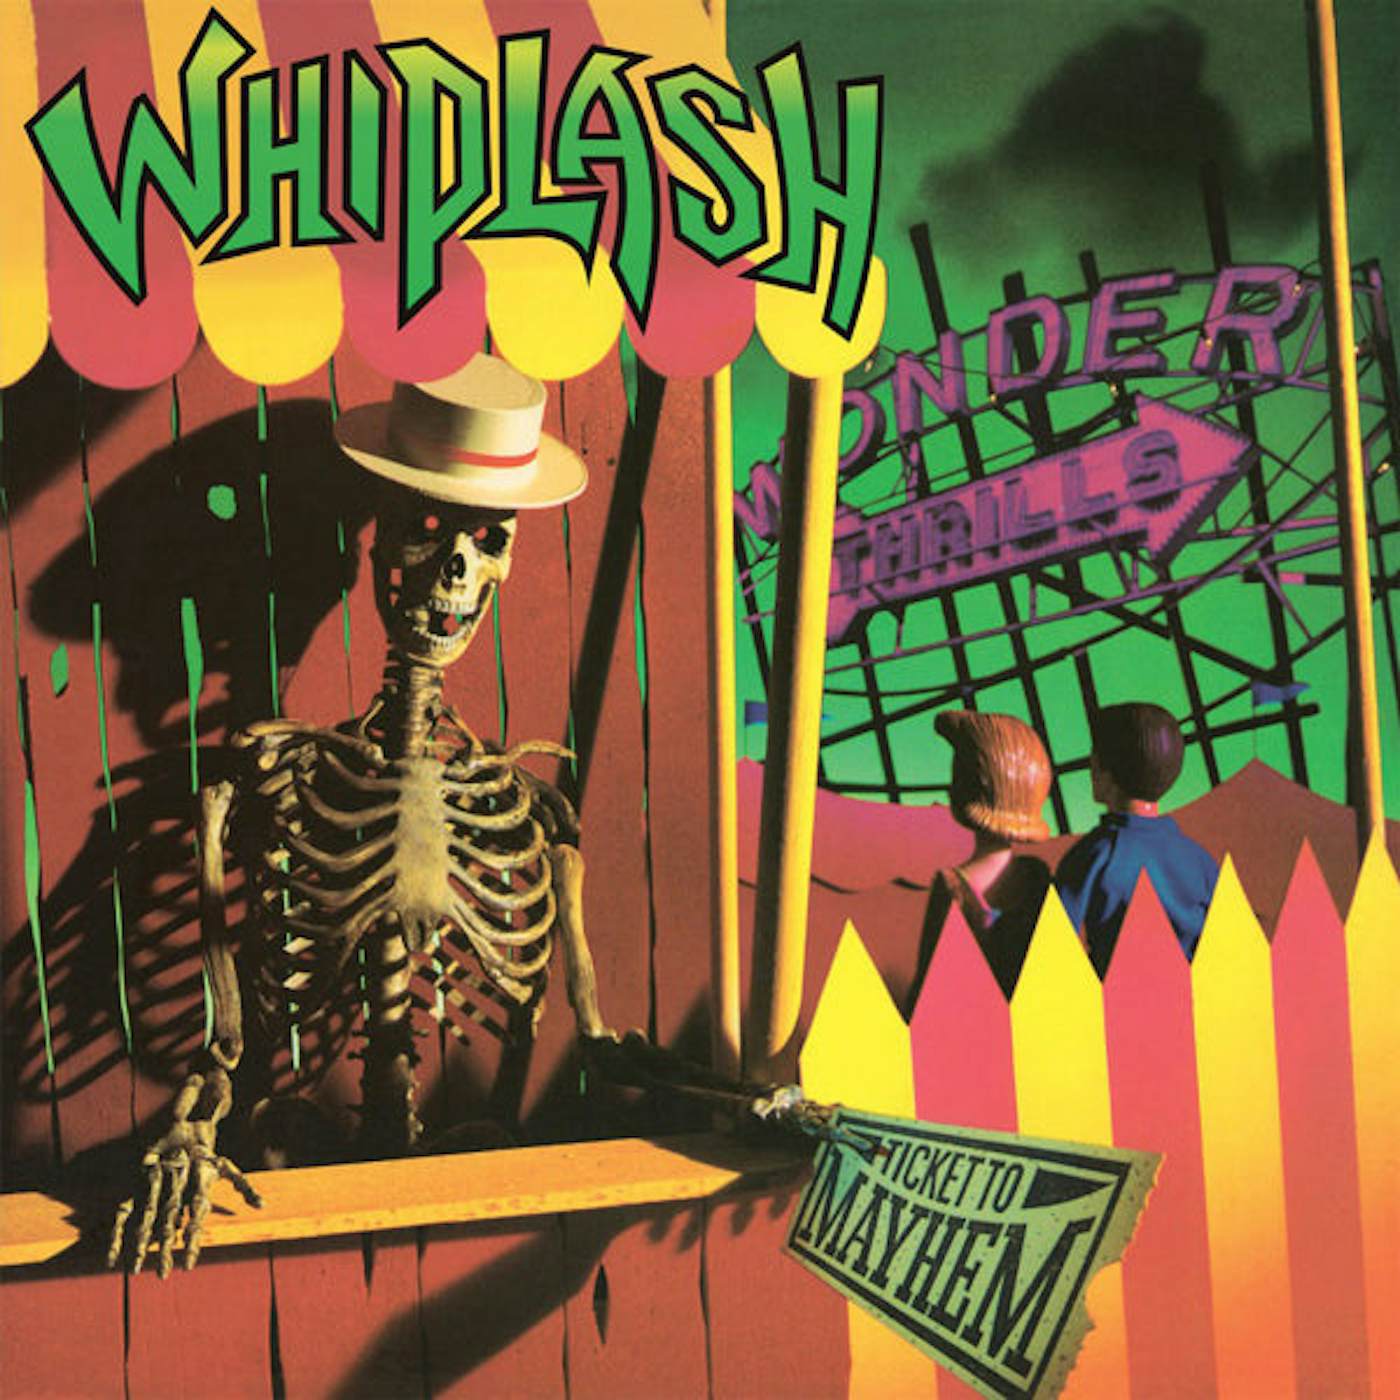 Whiplash LP - Ticket To Mayhem (1Lp Coloured) (Vinyl)